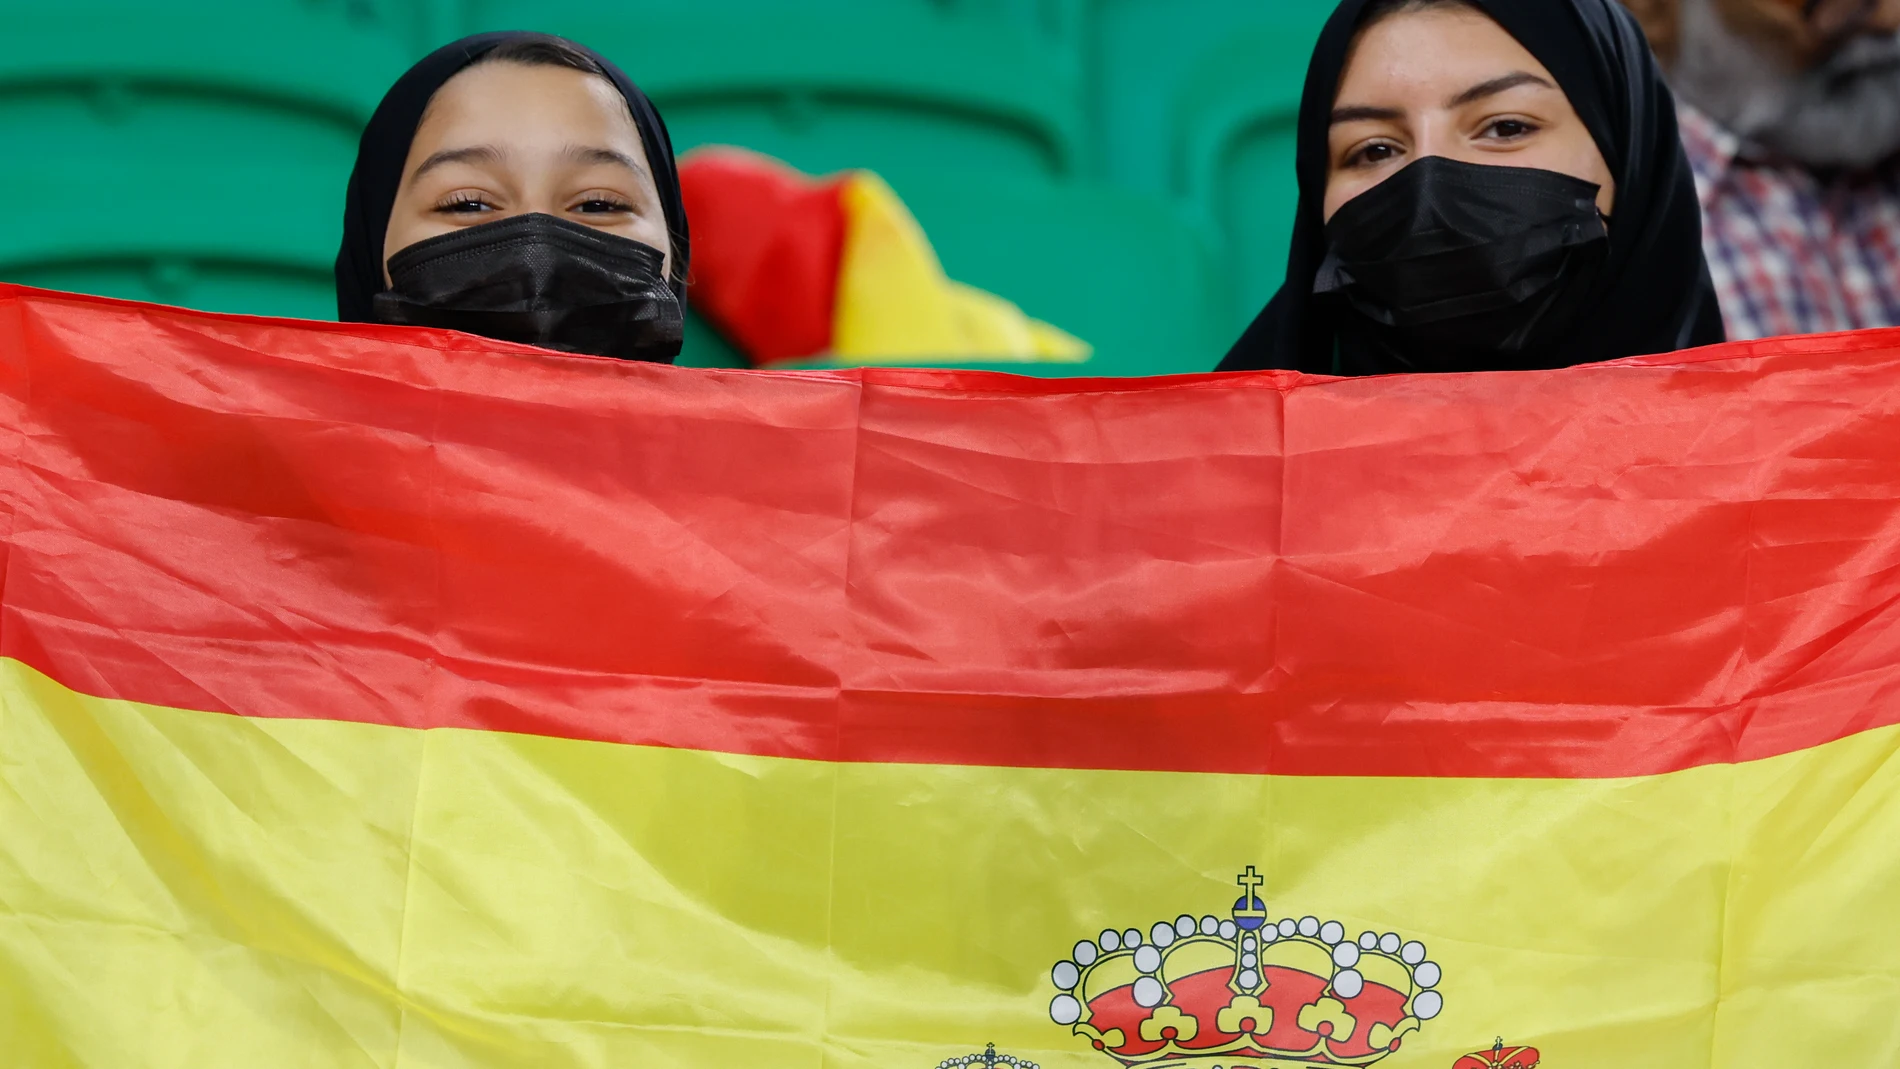 Aficionadas sostienen una bandera de España